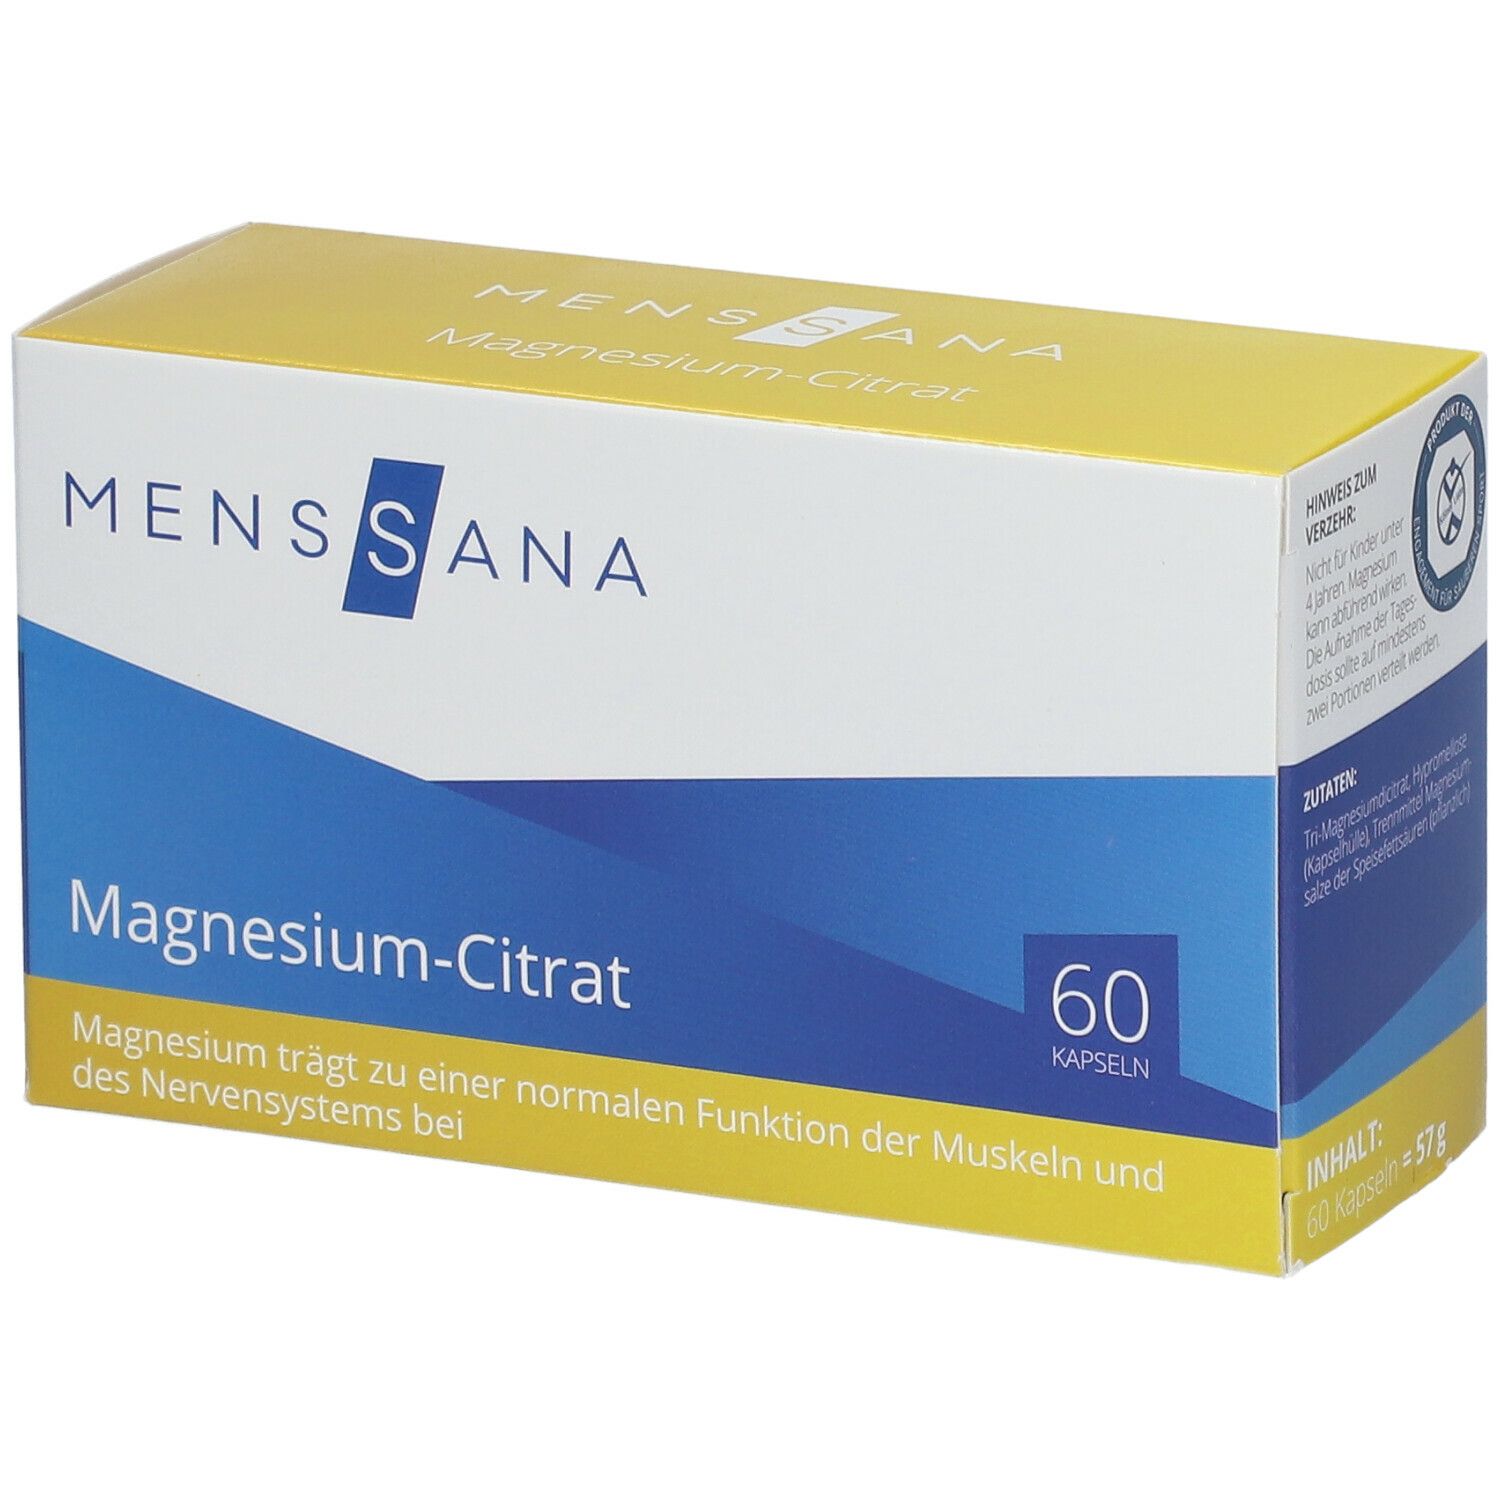 MensSana Magnesium-Citrat